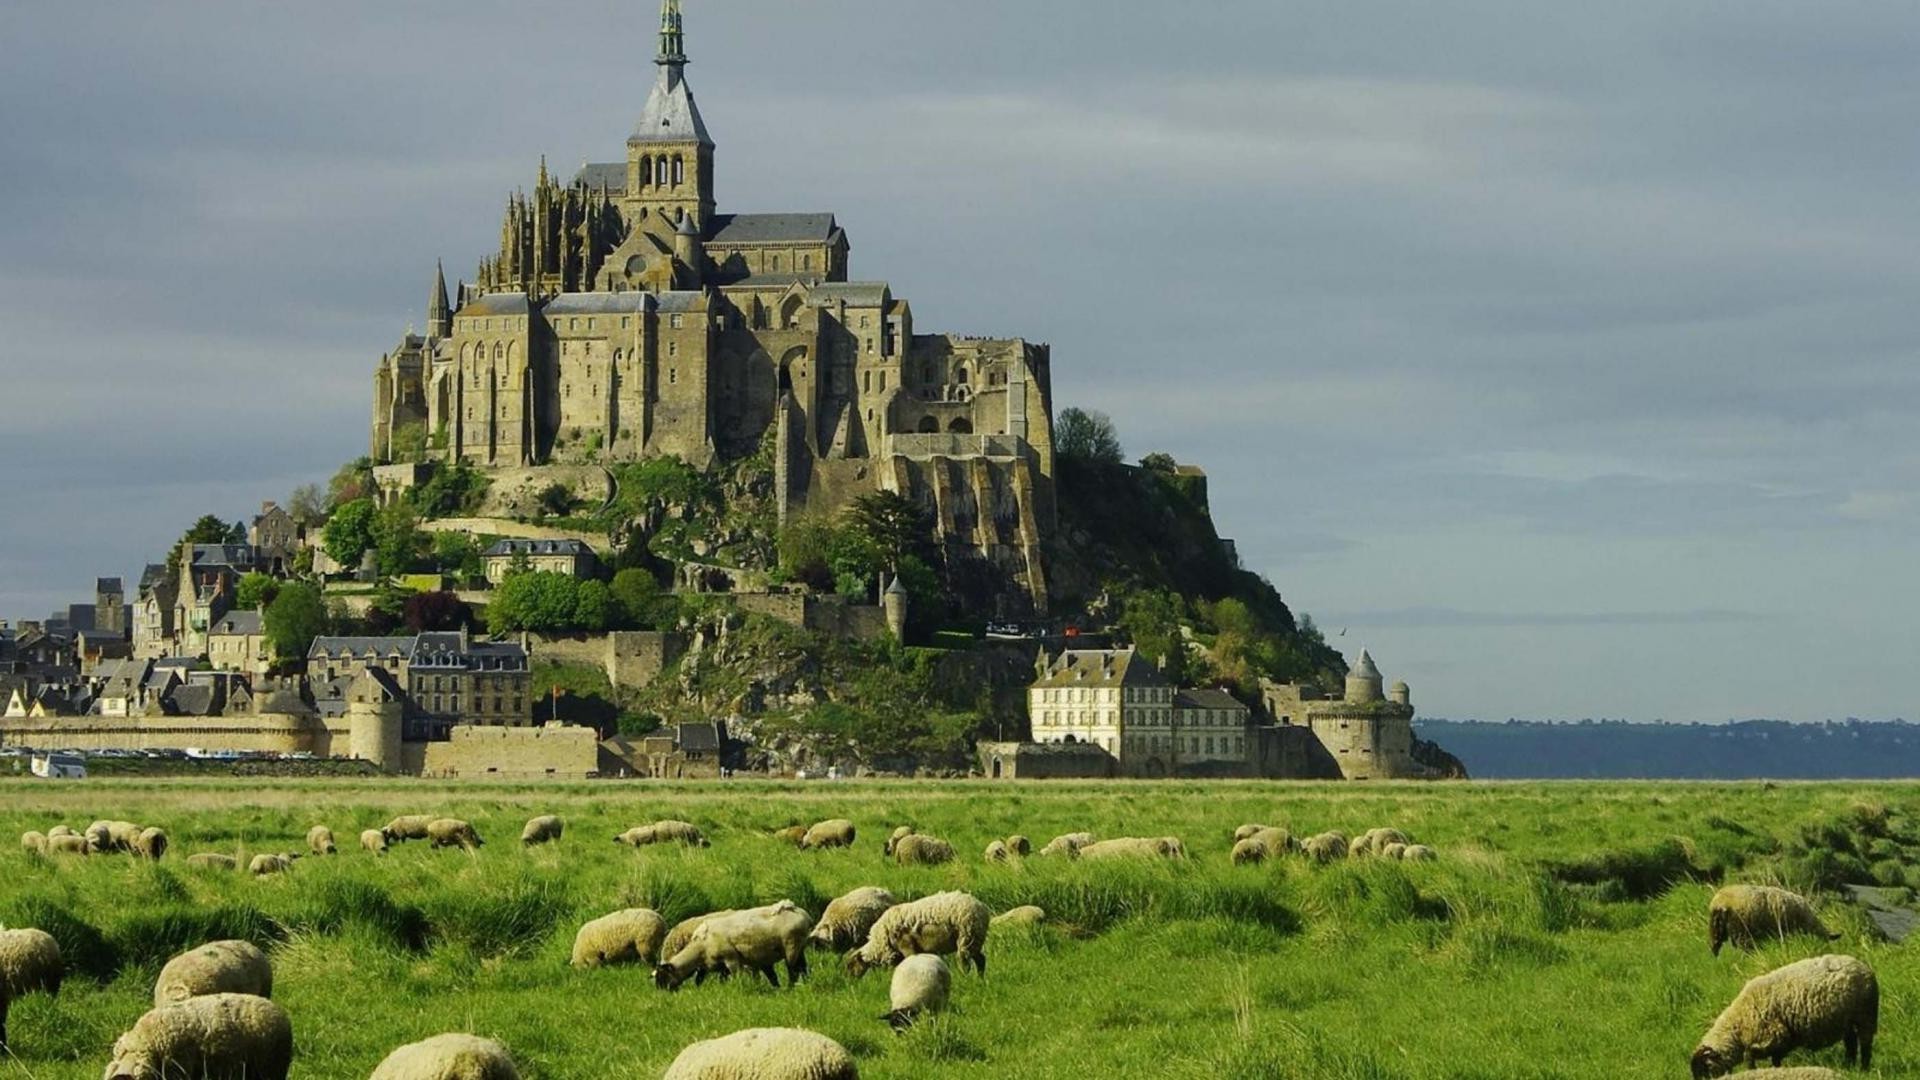 Mont Saint Michel, Castle, France, Plains, Sheep, Old Building, Building, Landscape Wallpaper